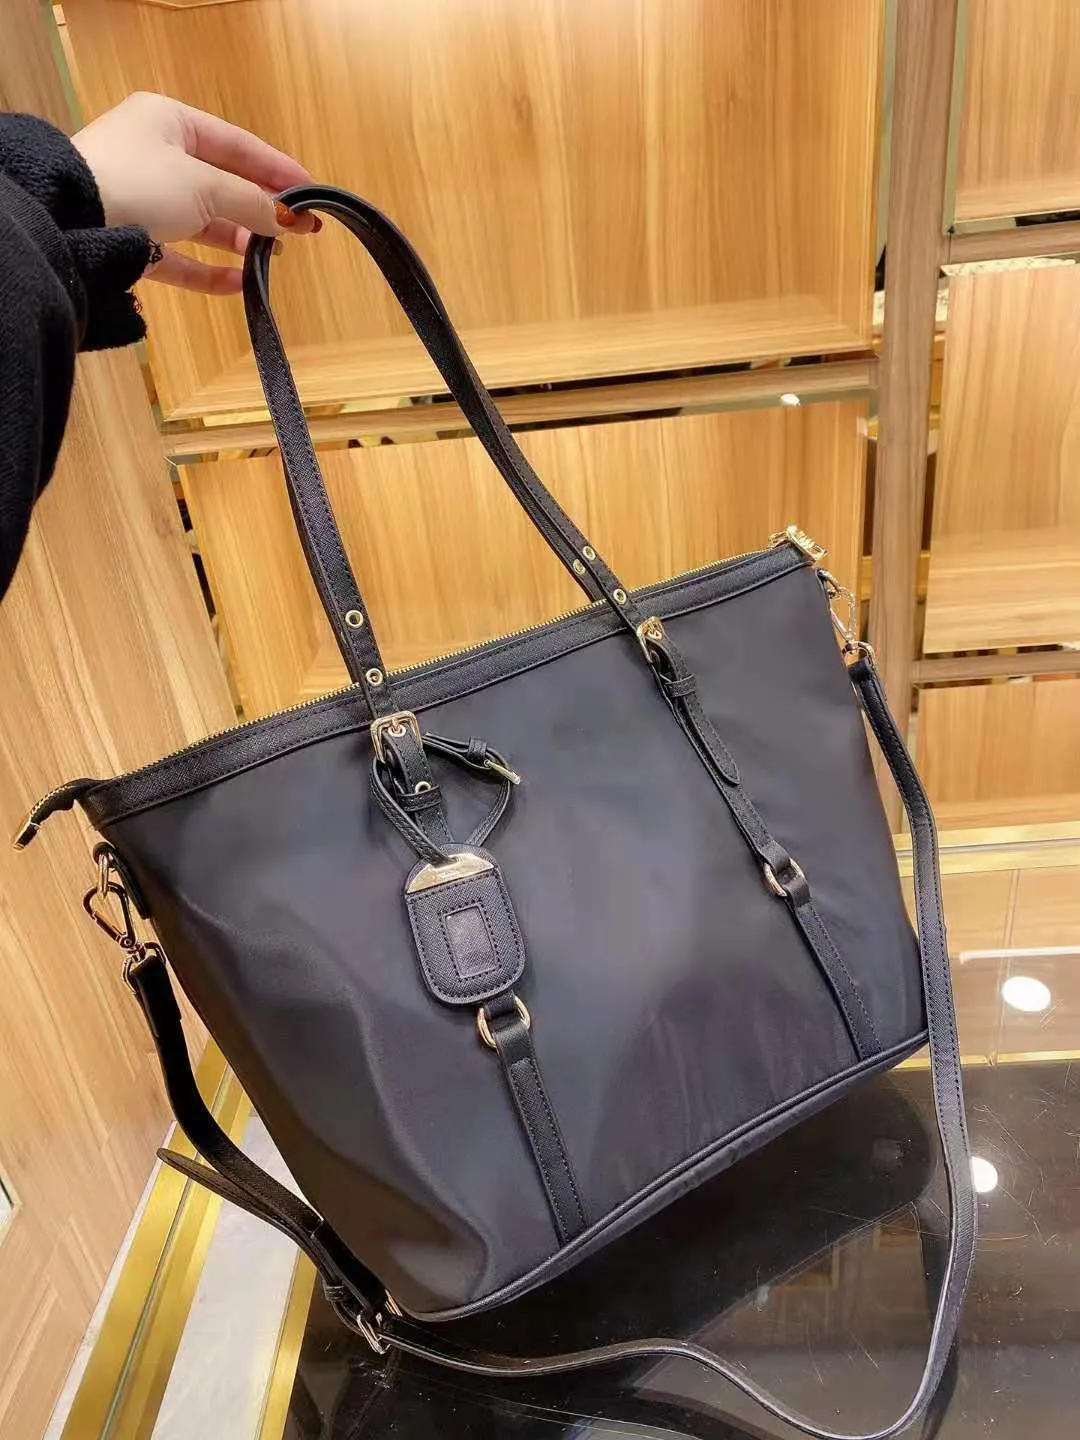 projektant zaprojektowany jak wysokiej jakości klasyczny torba na ramię w torbie po przekątnej rozmiar 35 cm 28 cm